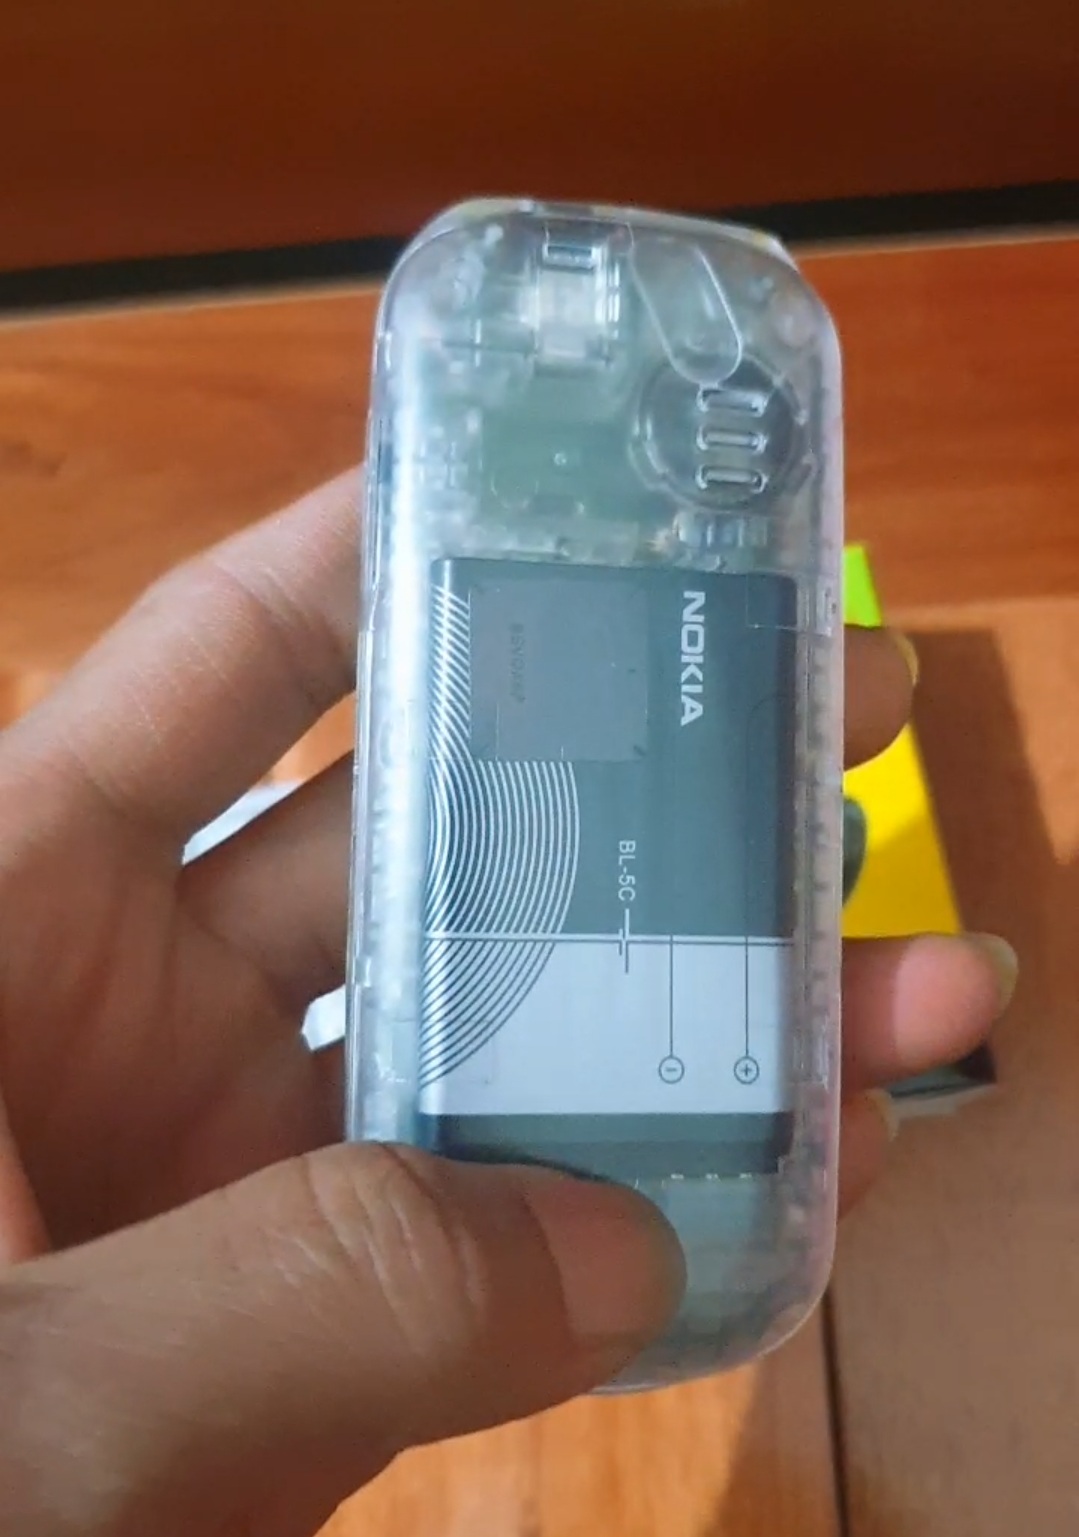 Điện thoại Nokia 1280 máy cũ thay vỏ  Cơ Hội Mua Sắm Công nghệ  Tuổi  Trẻ Online